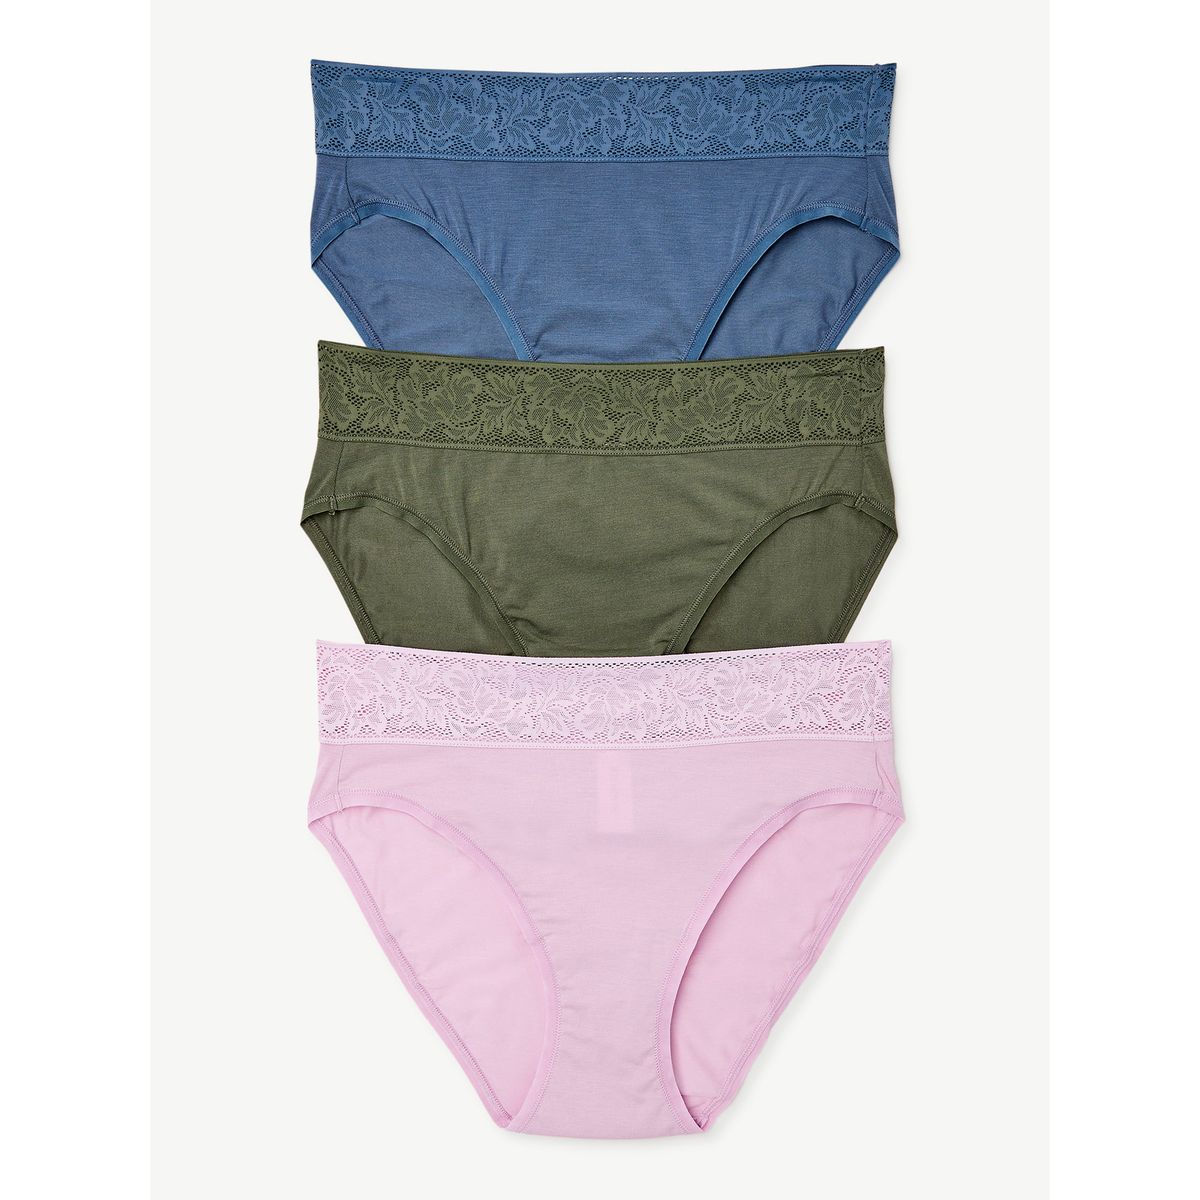 JOYSPUN Women's Panties - 3 Pack, Shop Today. Get it Tomorrow!